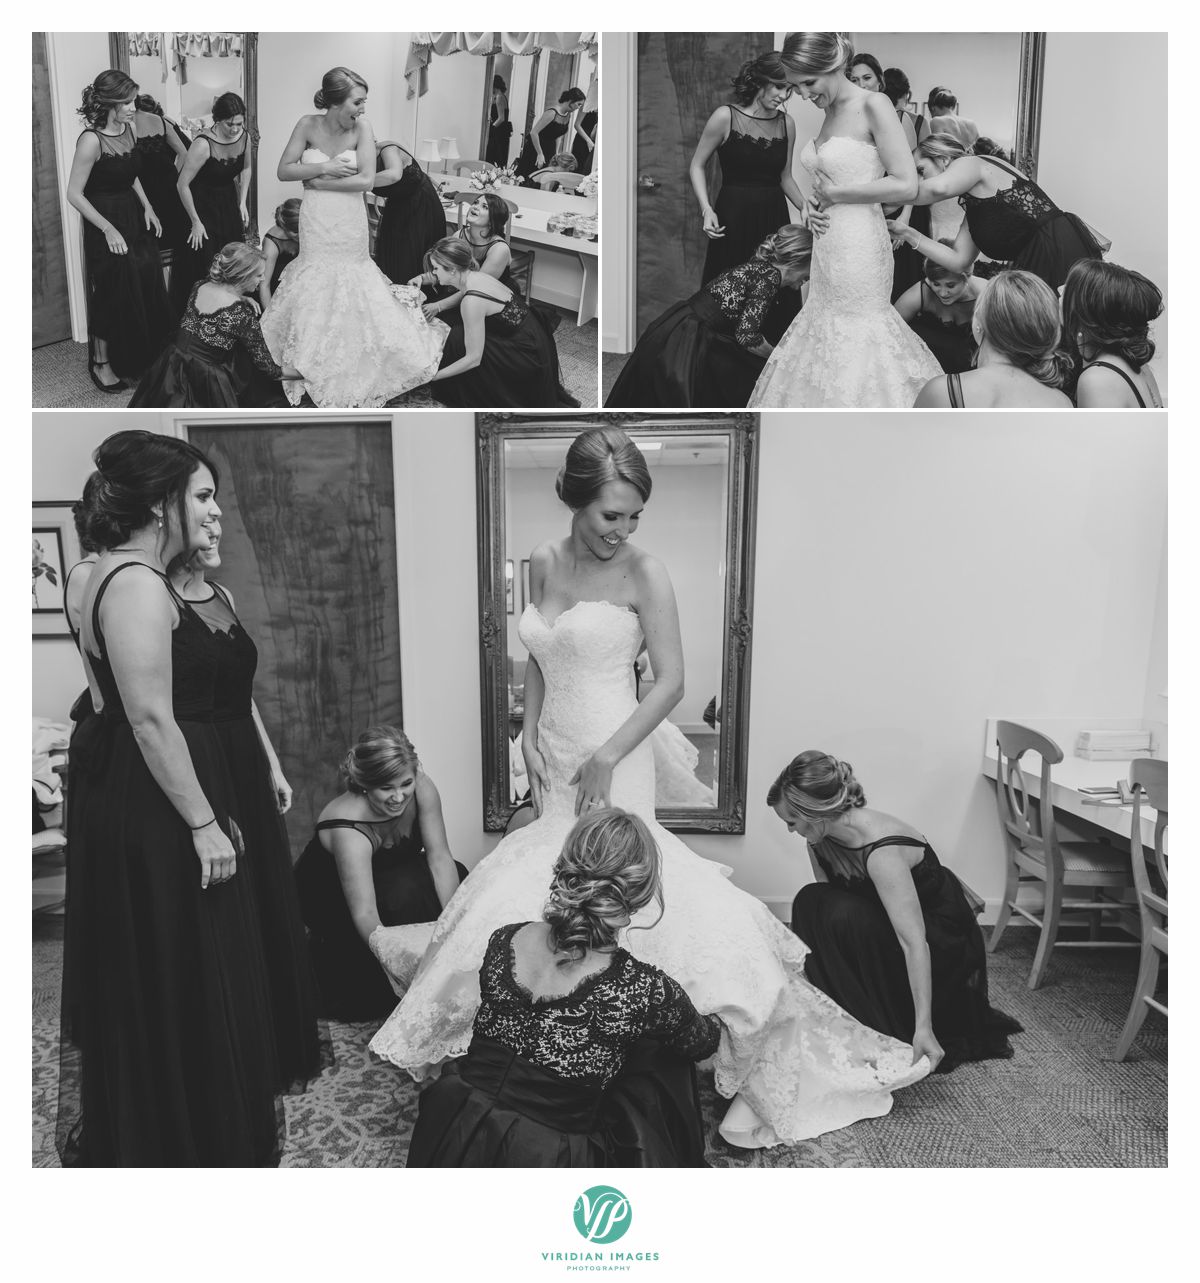 Bridesmaids helping bride into wedding dress